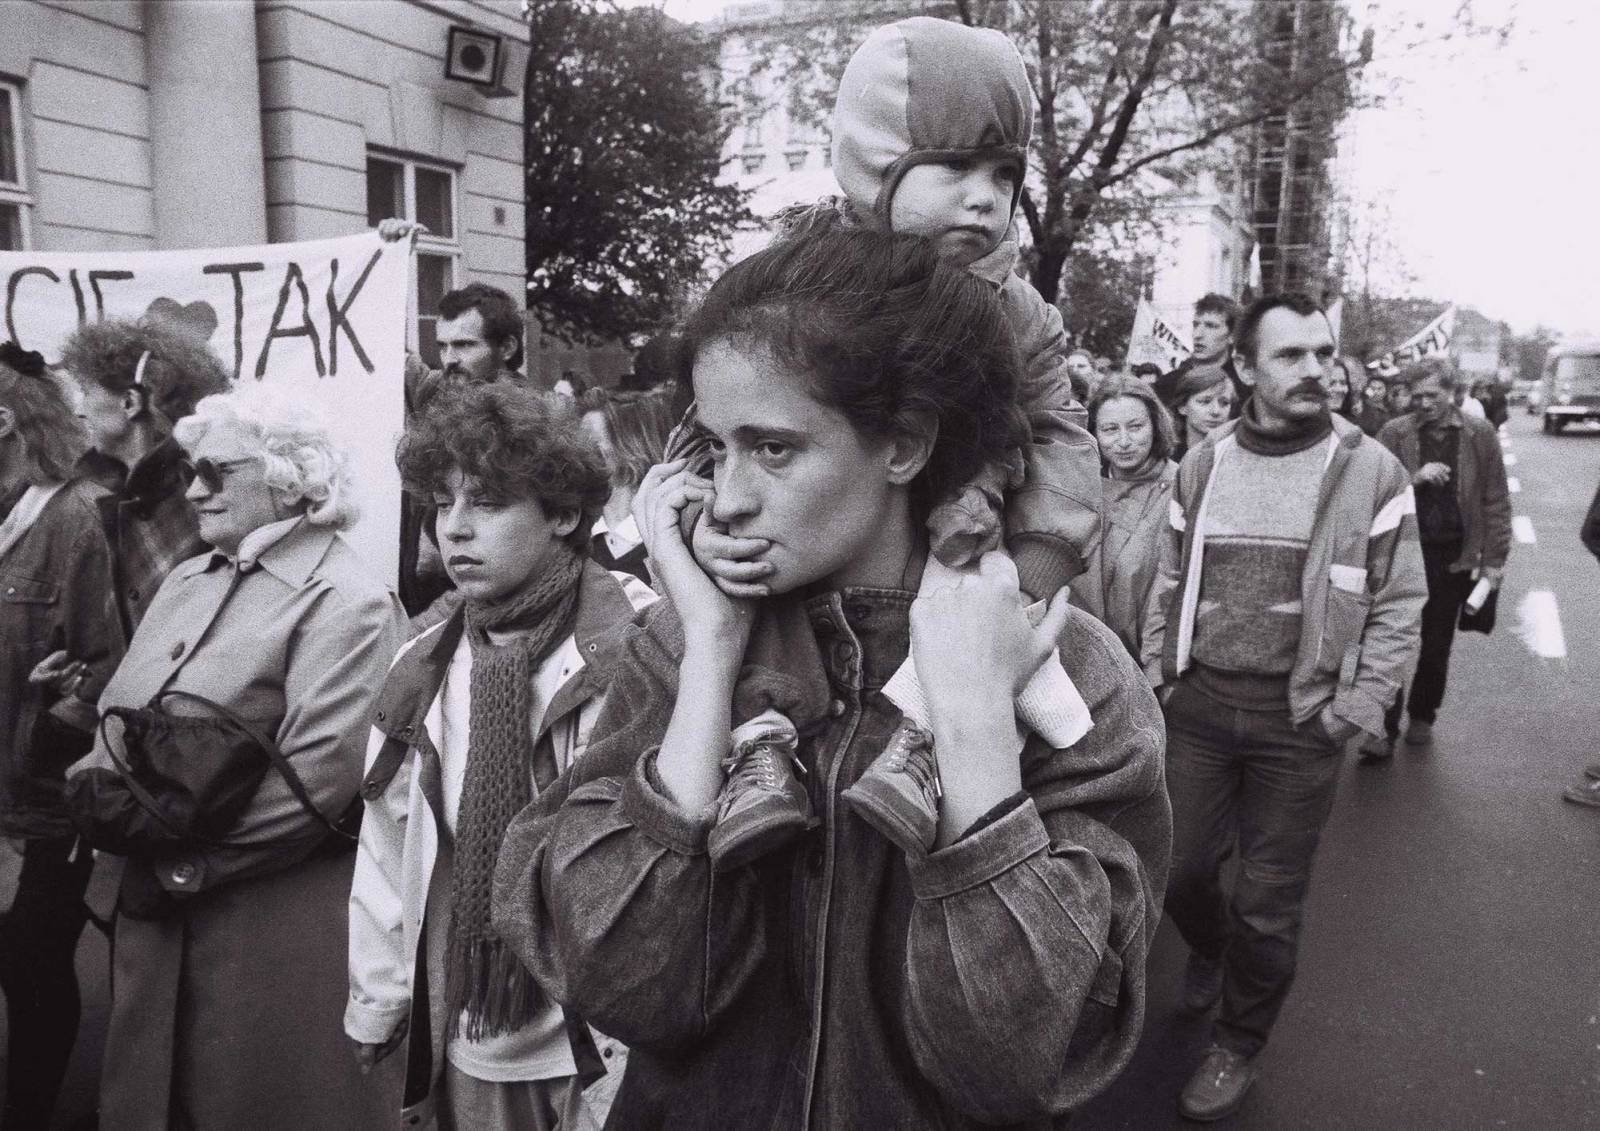 Protesty przeciw zaostrzeniu prawa aborcyjnego, 1989 (Fot. Zenon Zyburtowicz/East News)